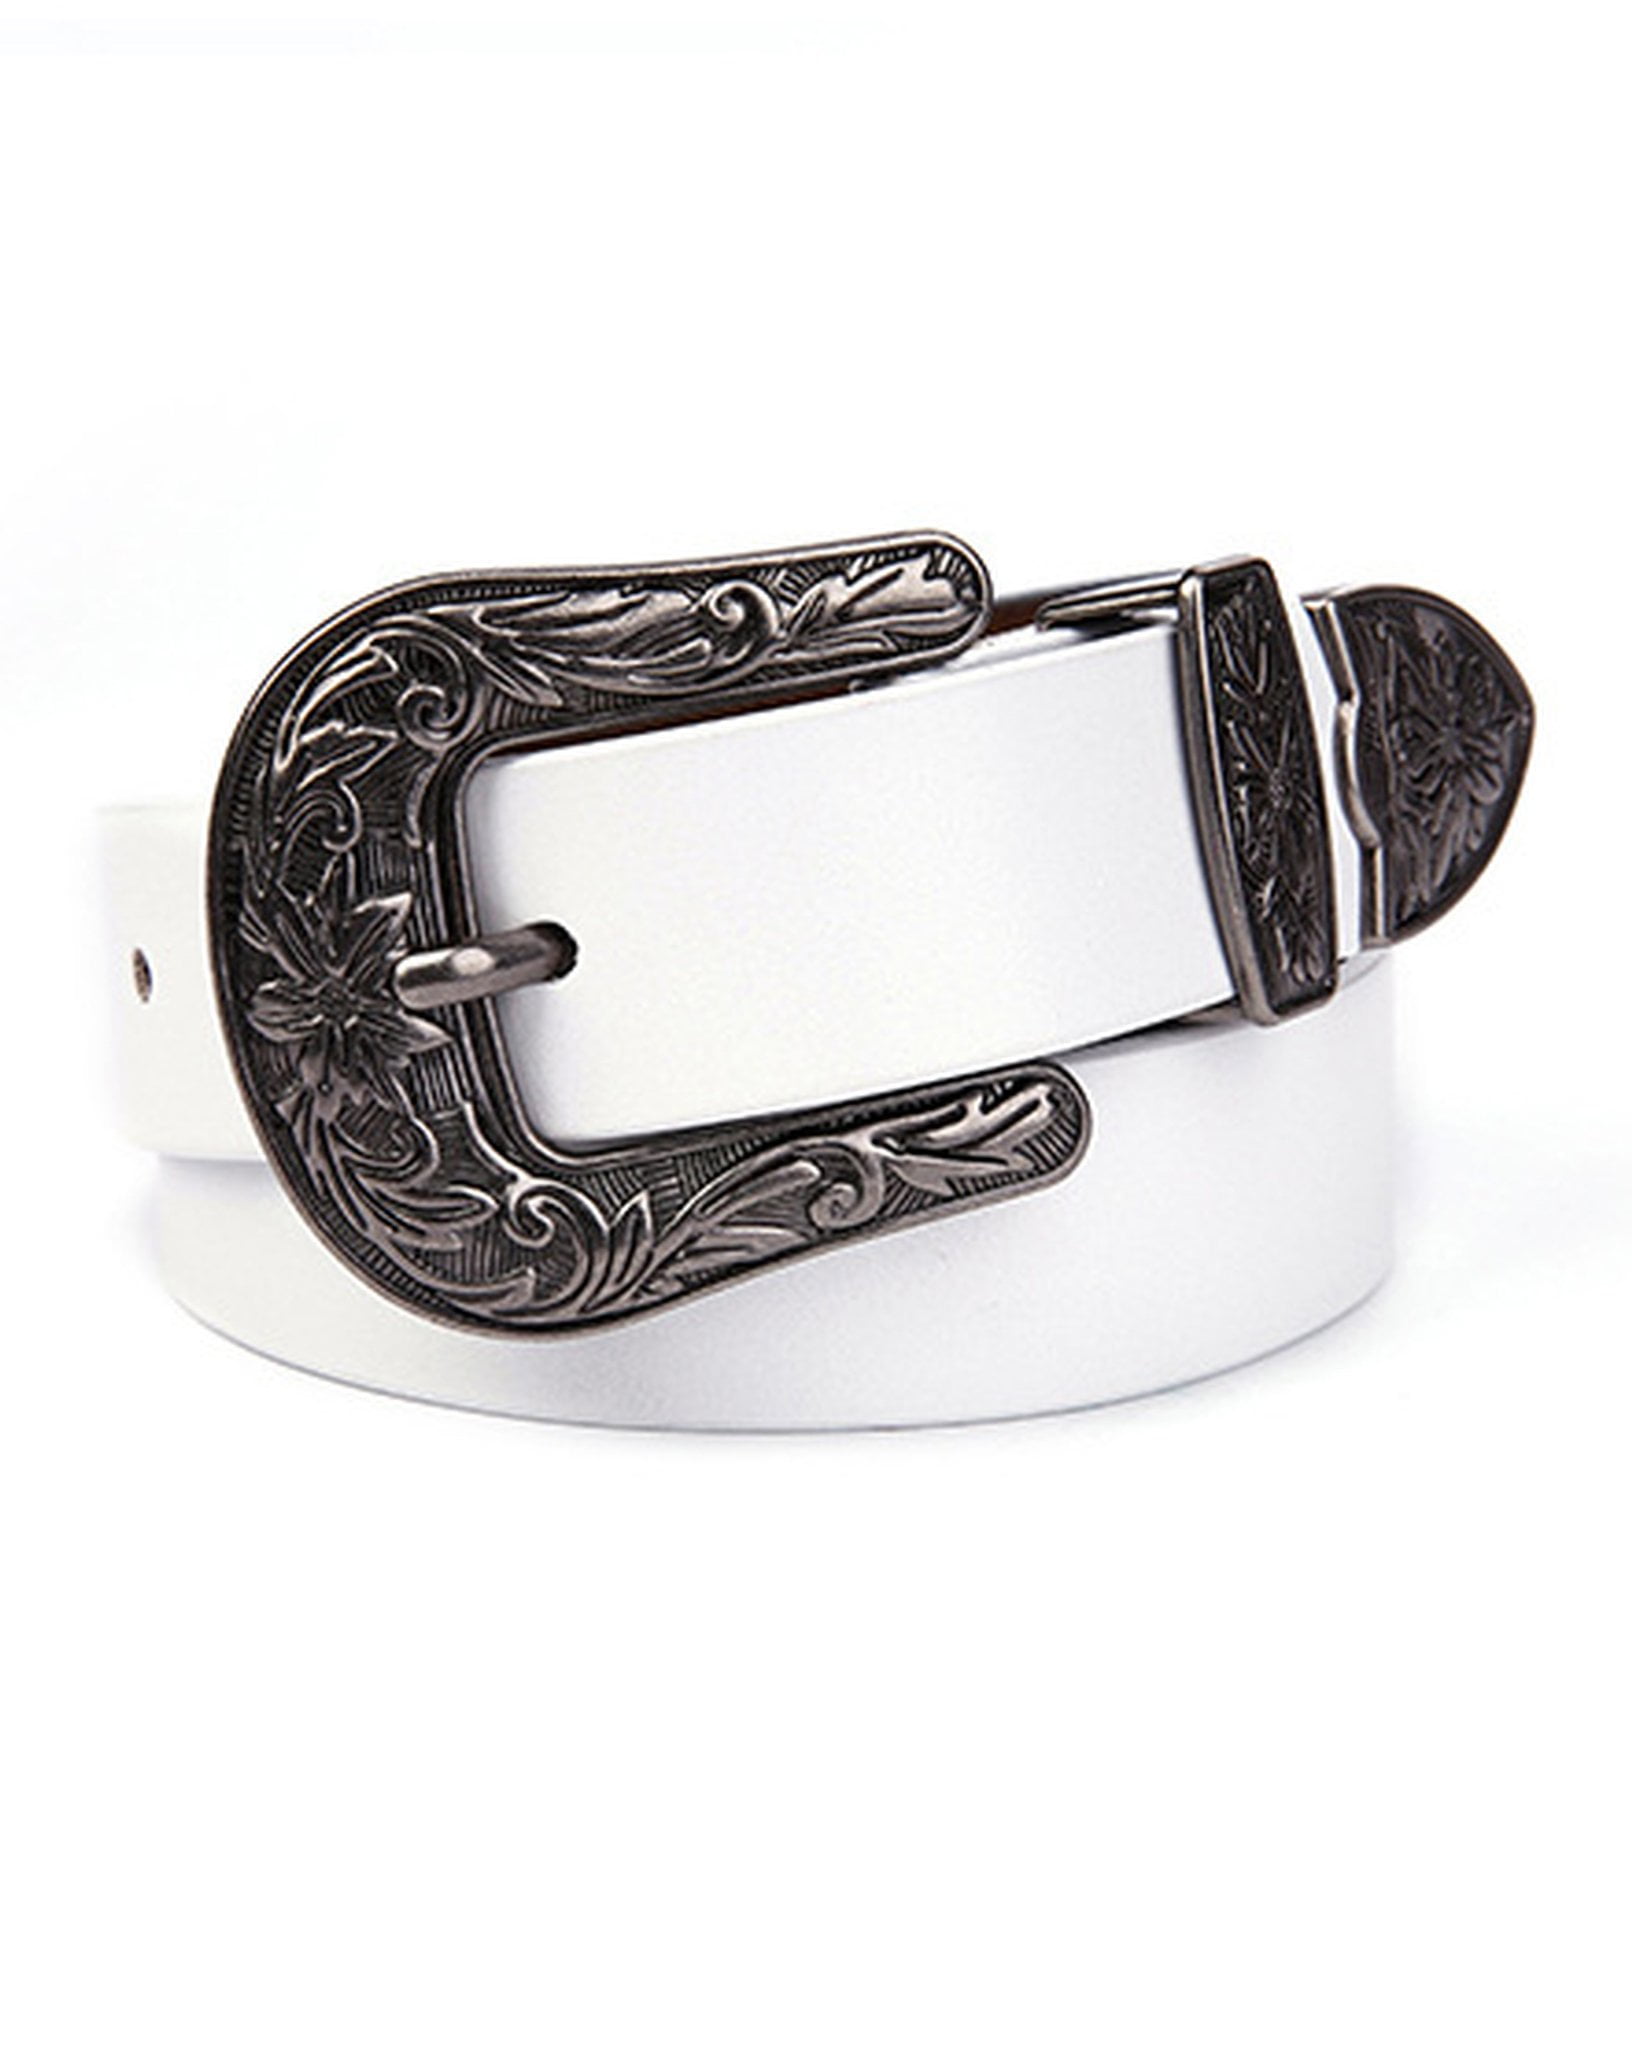 Vintage Belt Buckle|Flower Shape|Unusual Handcrafted Belt Buckle|Pewter Look